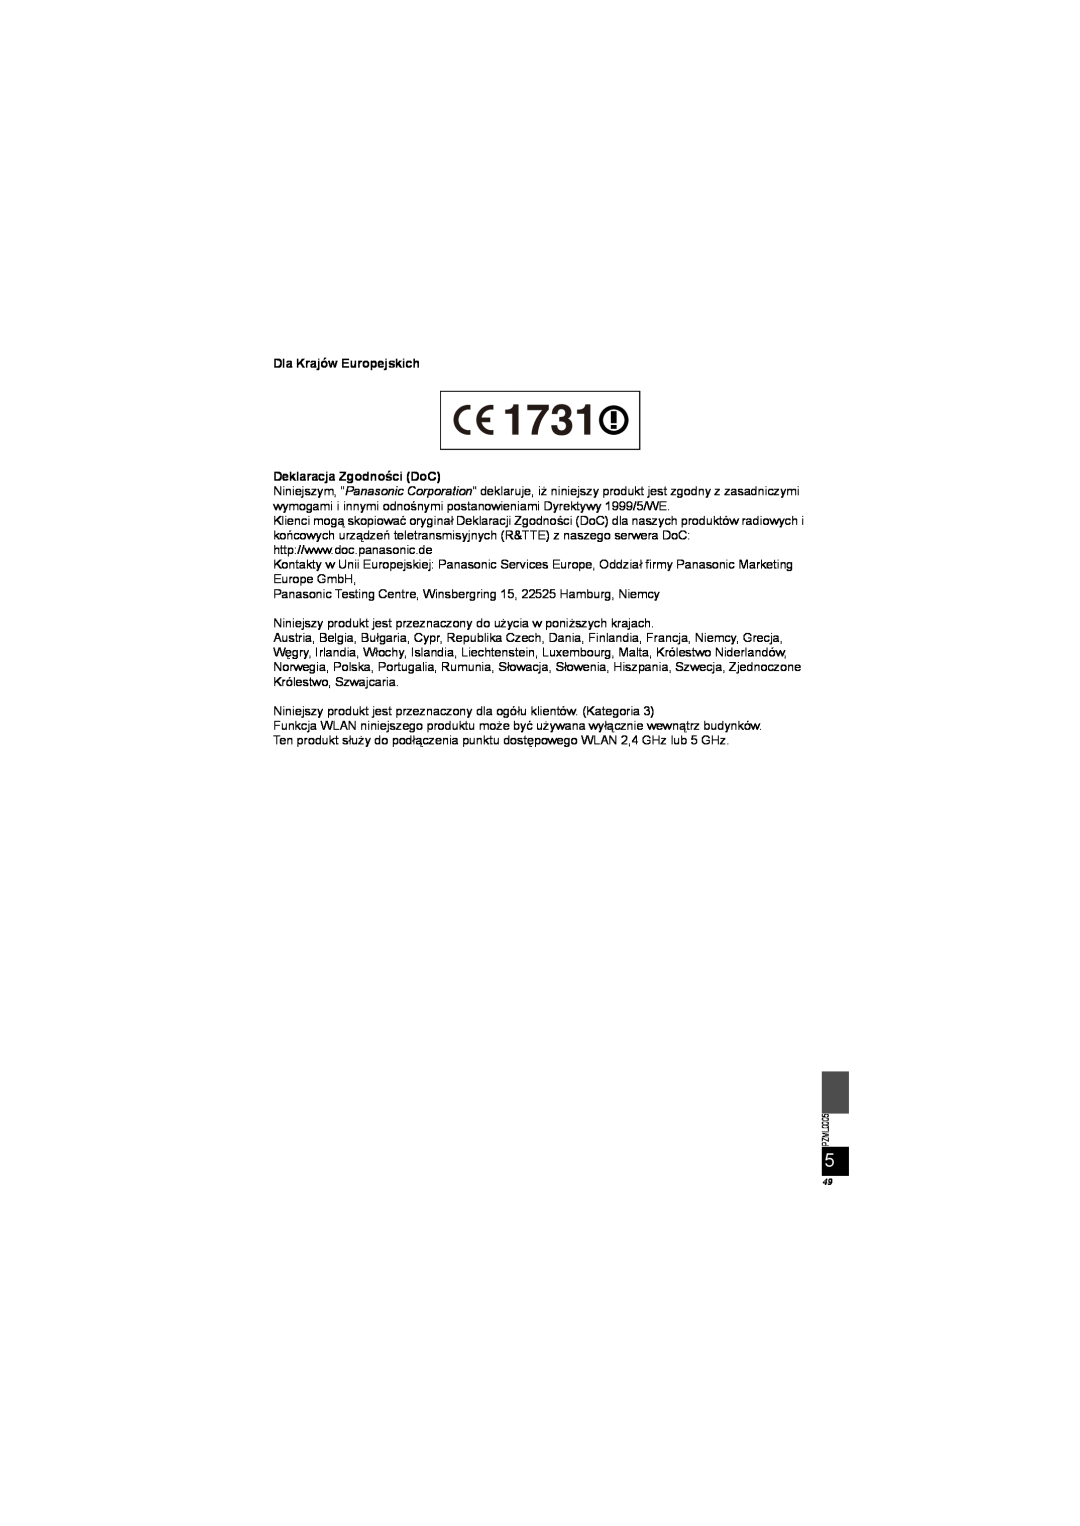 Panasonic DY-WL10 manual Dla Krajów Europejskich Deklaracja Zgodności DoC 